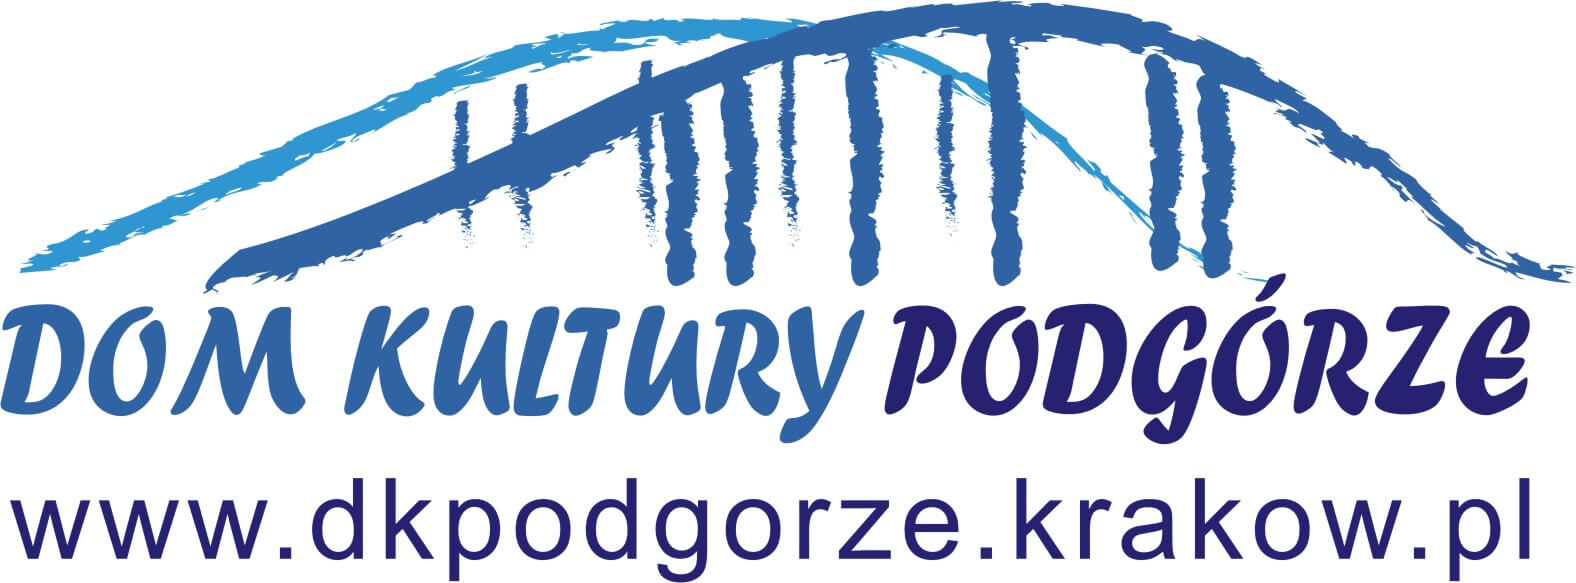 DK PODGÓRZE - logo 2